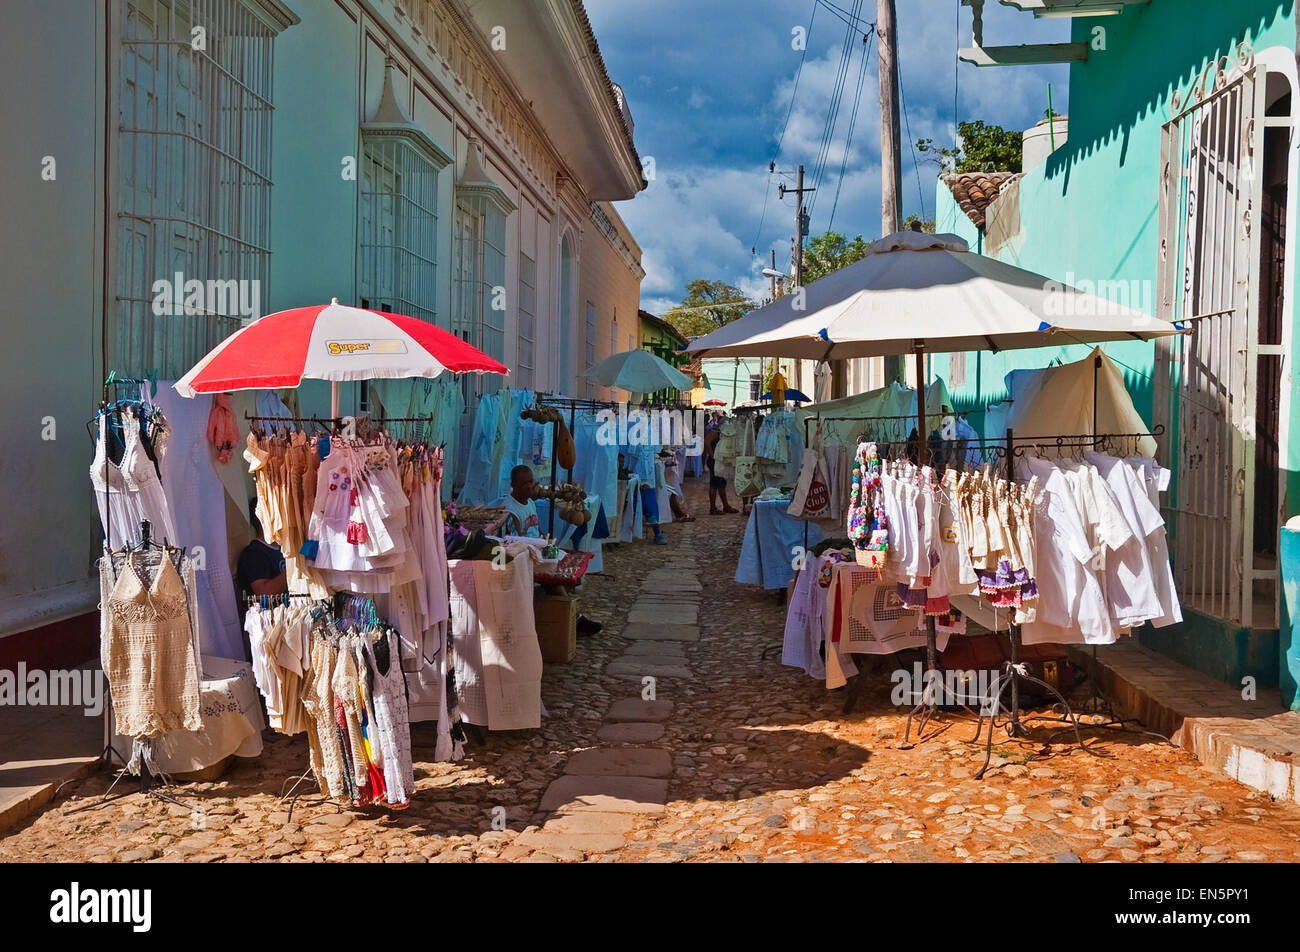 Vista horizontal de un mercado callejero de artesanías en Trinidad, Cuba. Foto de stock